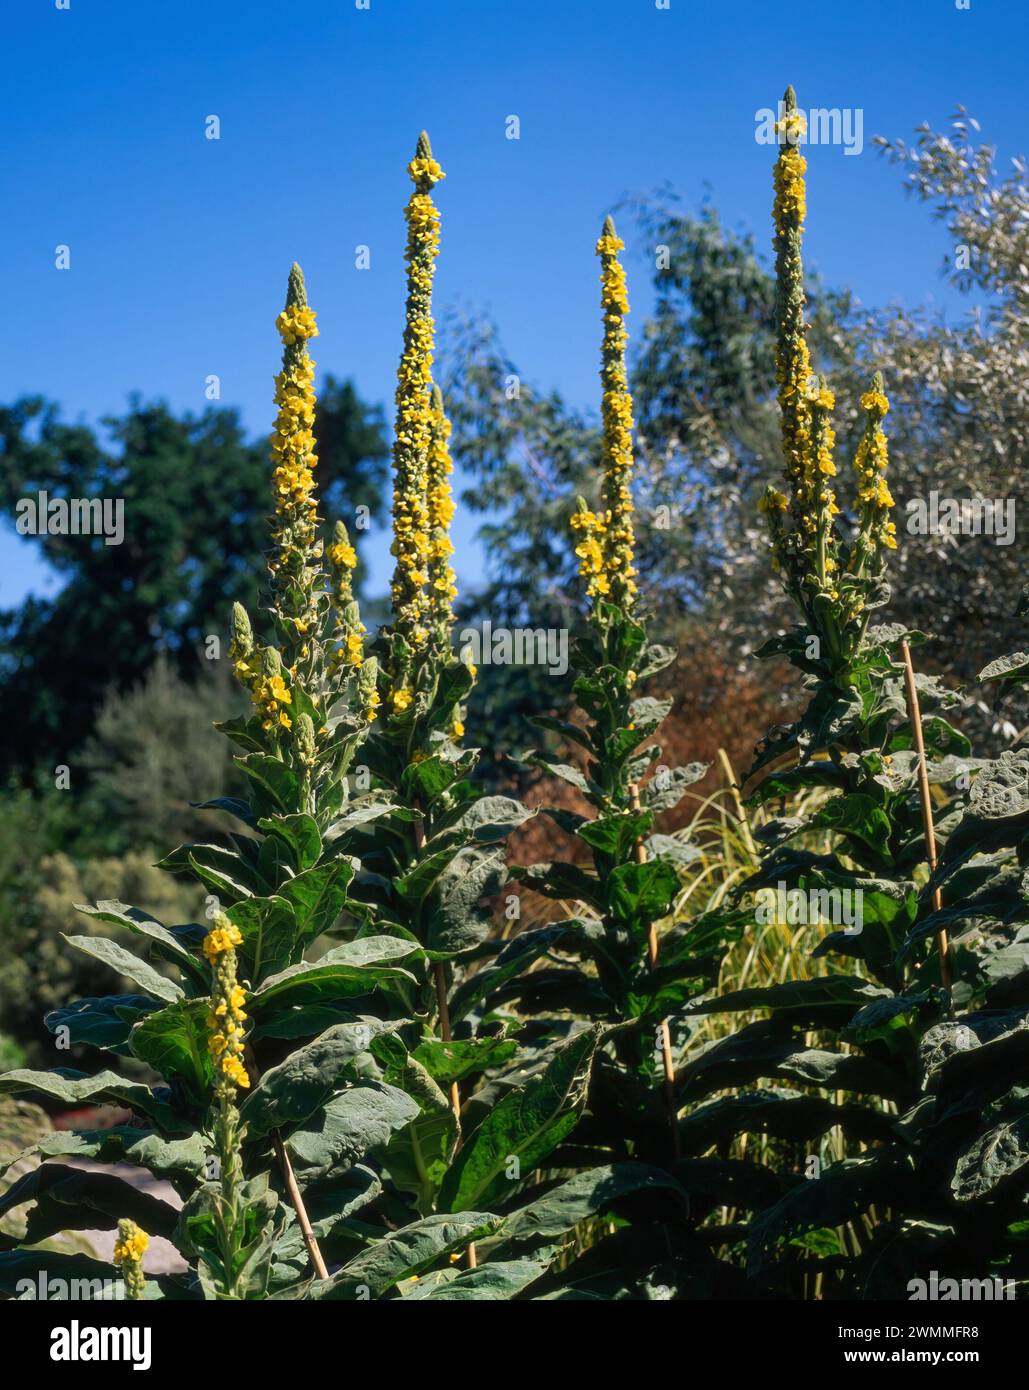 Hohe Stämme von gelben Blüten von Verbascum thapsus große Maulein / Aaron-Stange, die im Juli im englischen Garten vor einem blauen Himmel in England wachsen Stockfoto